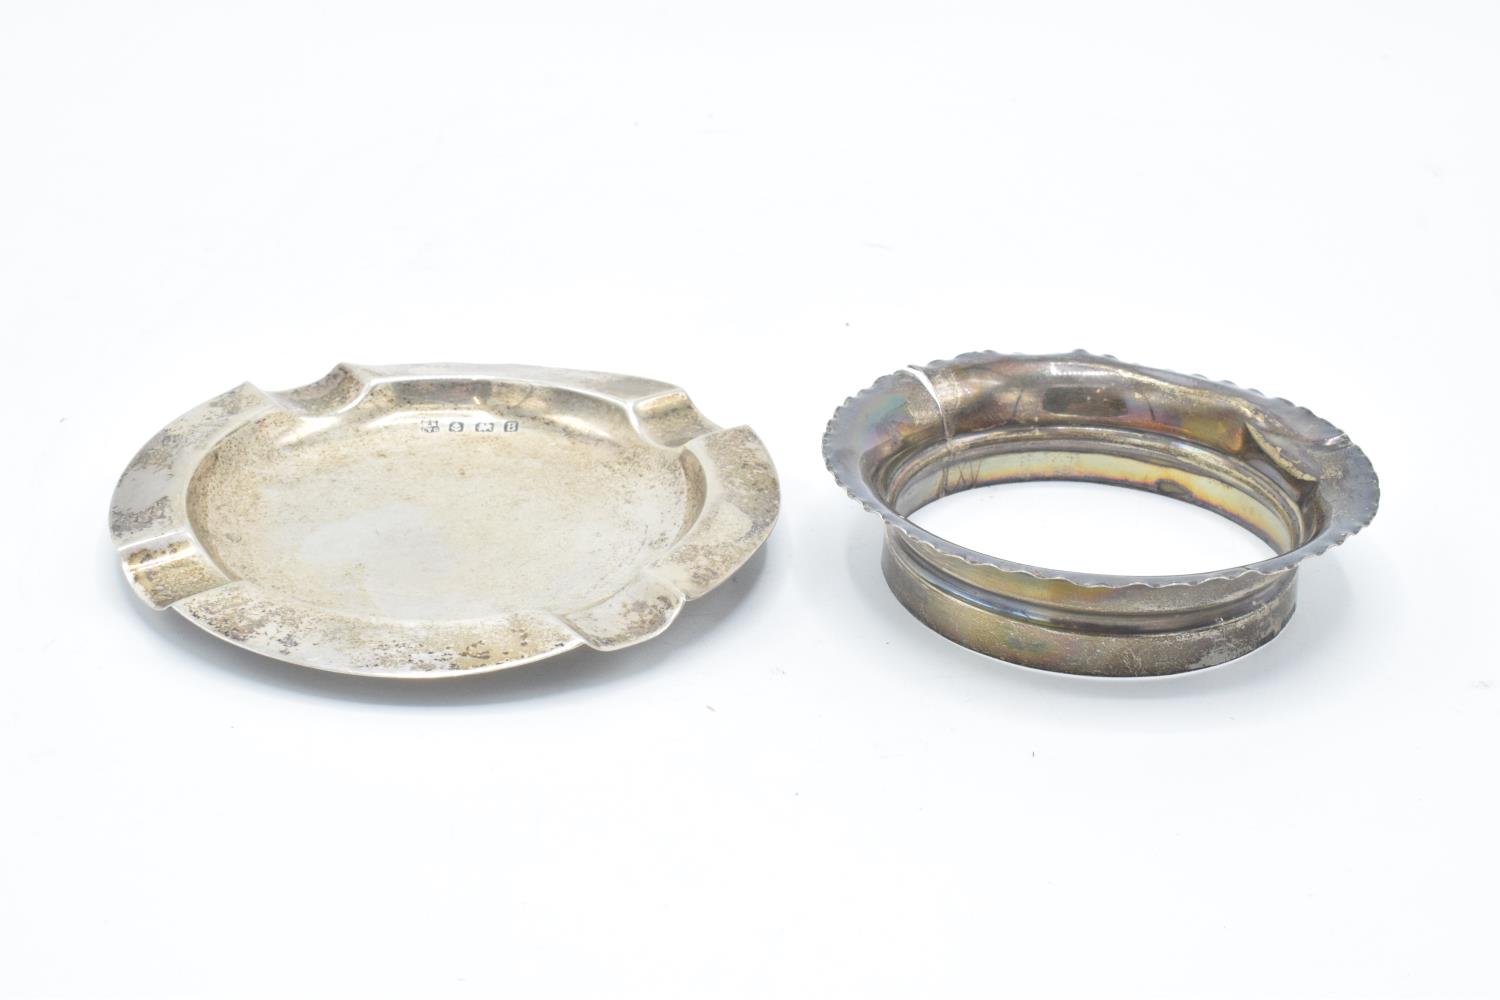 Silver ashtray (Birmingham 1926) and a silver collar (Birmingham 1904) (59.9 grams) (2). Collar sold